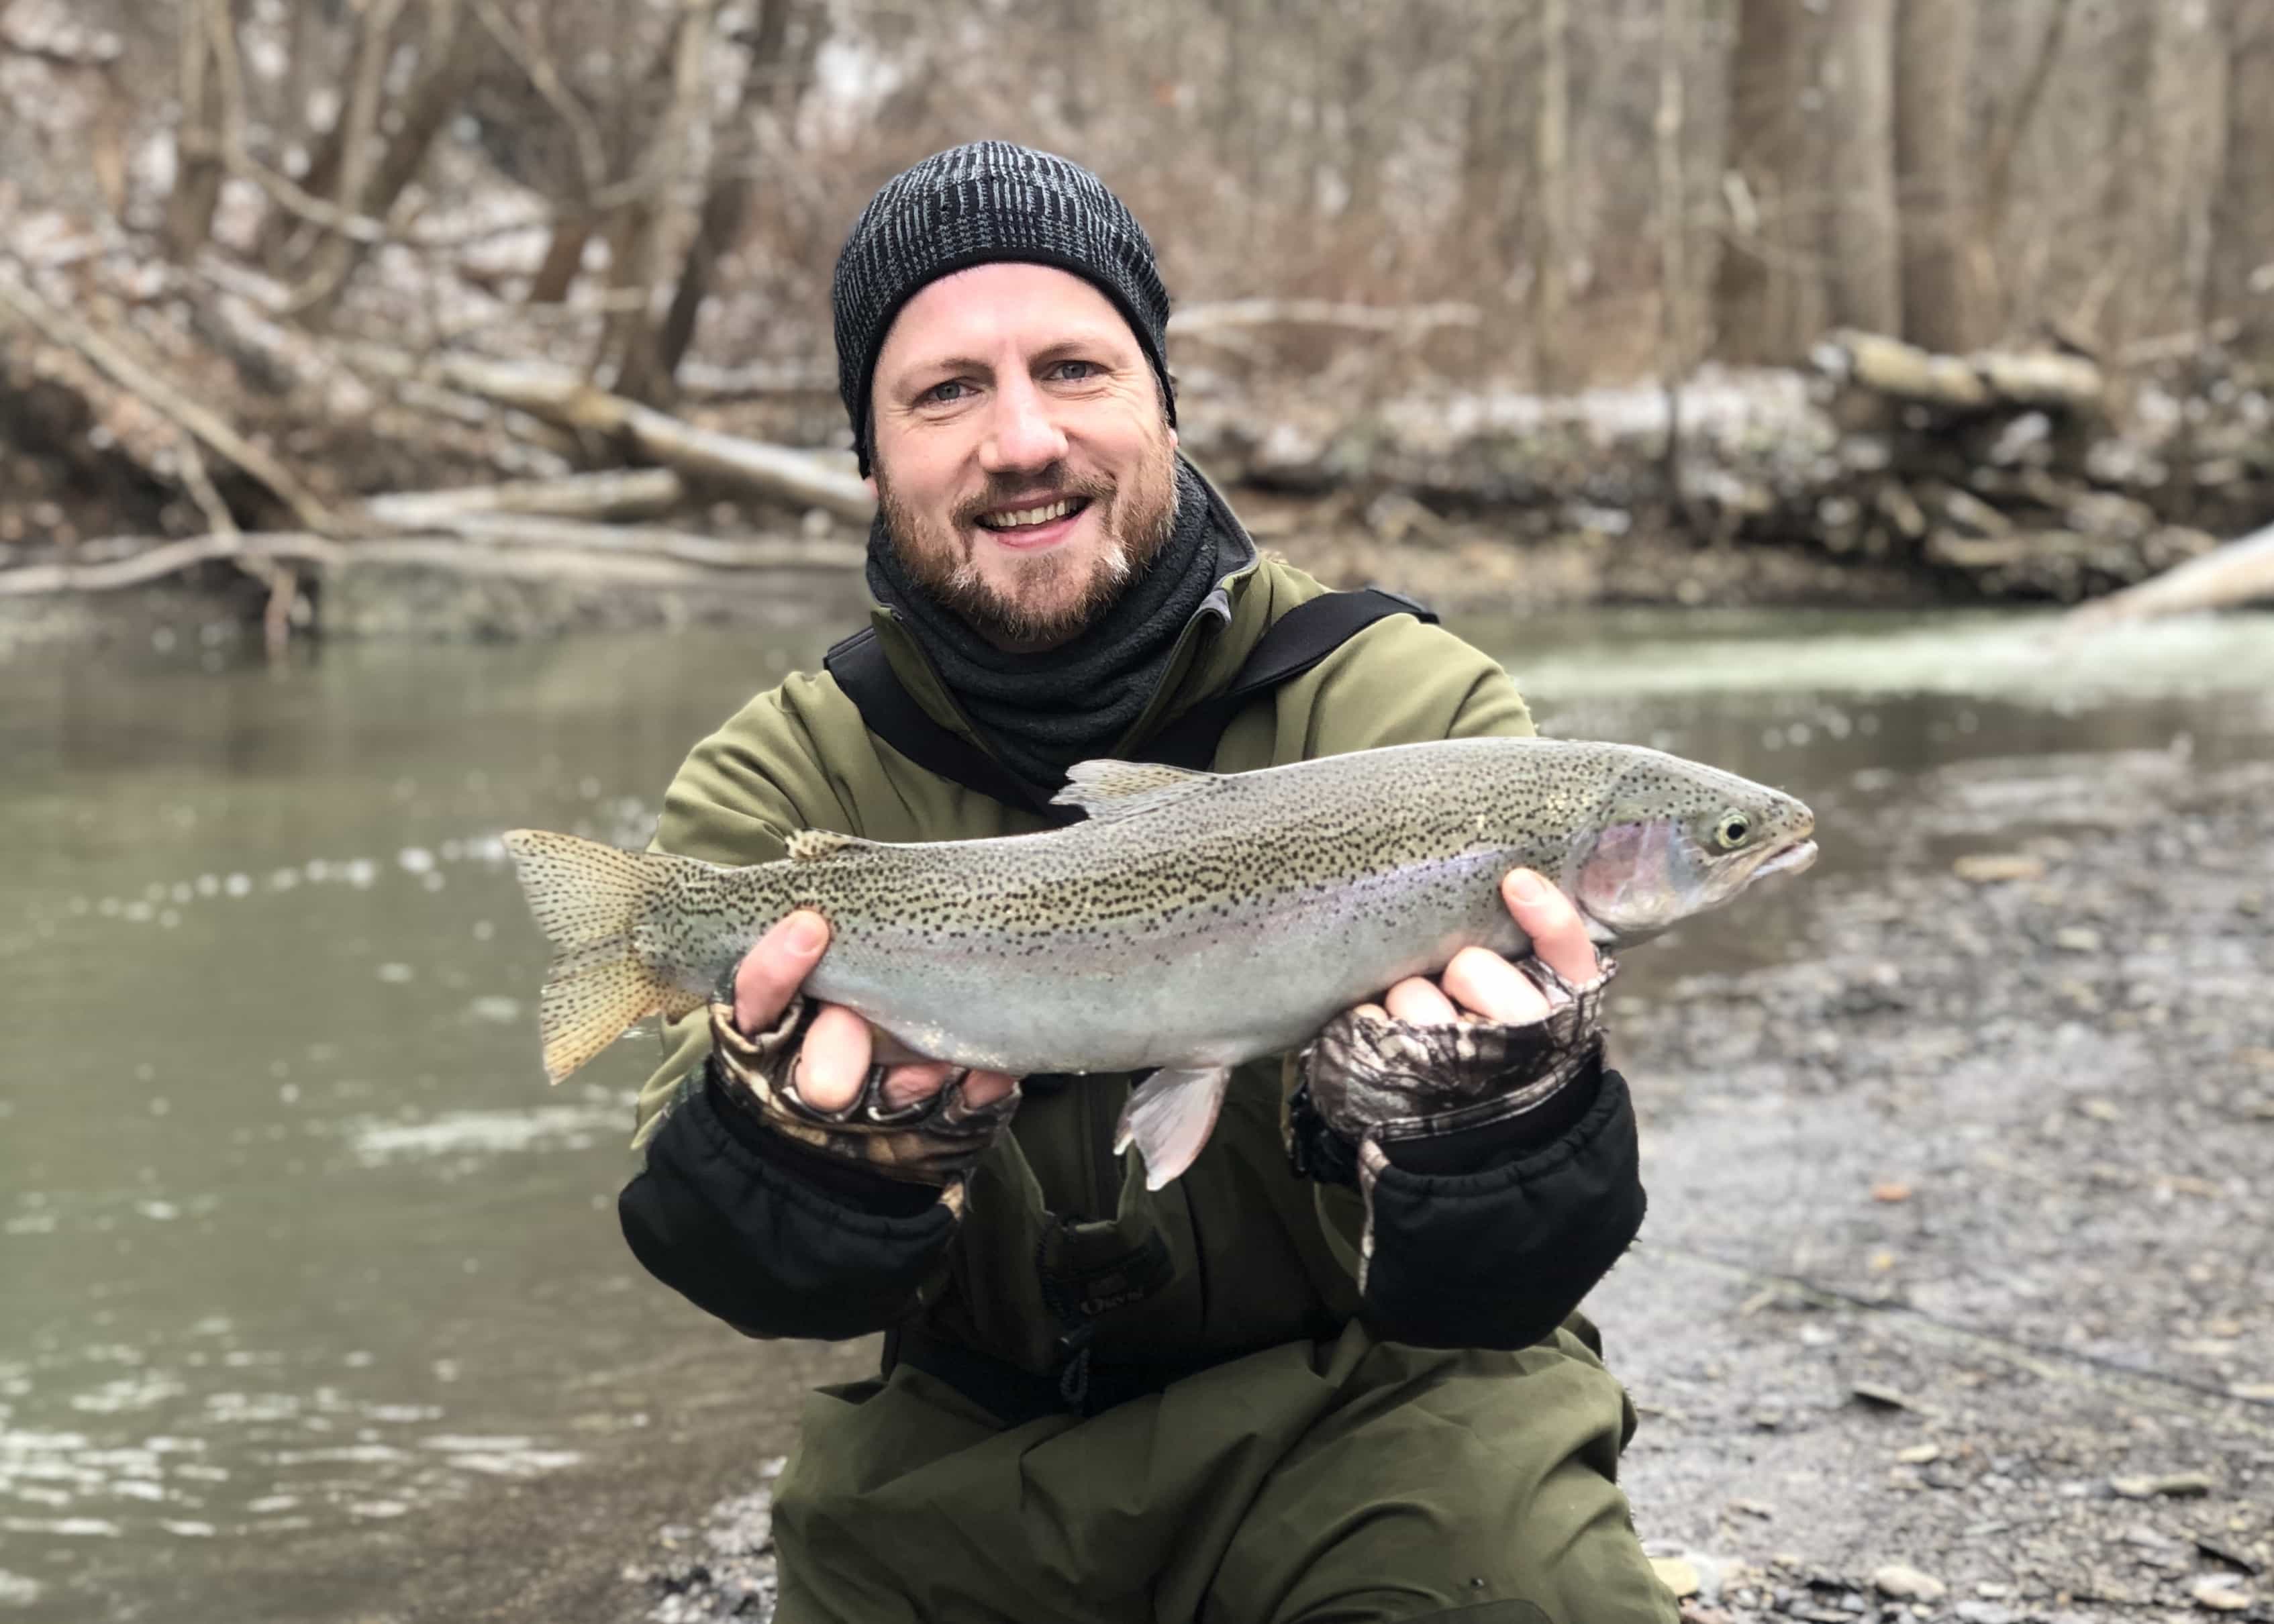 20181205 150229890 iOS - Winter Charter Fishing in Buffalo Niagara